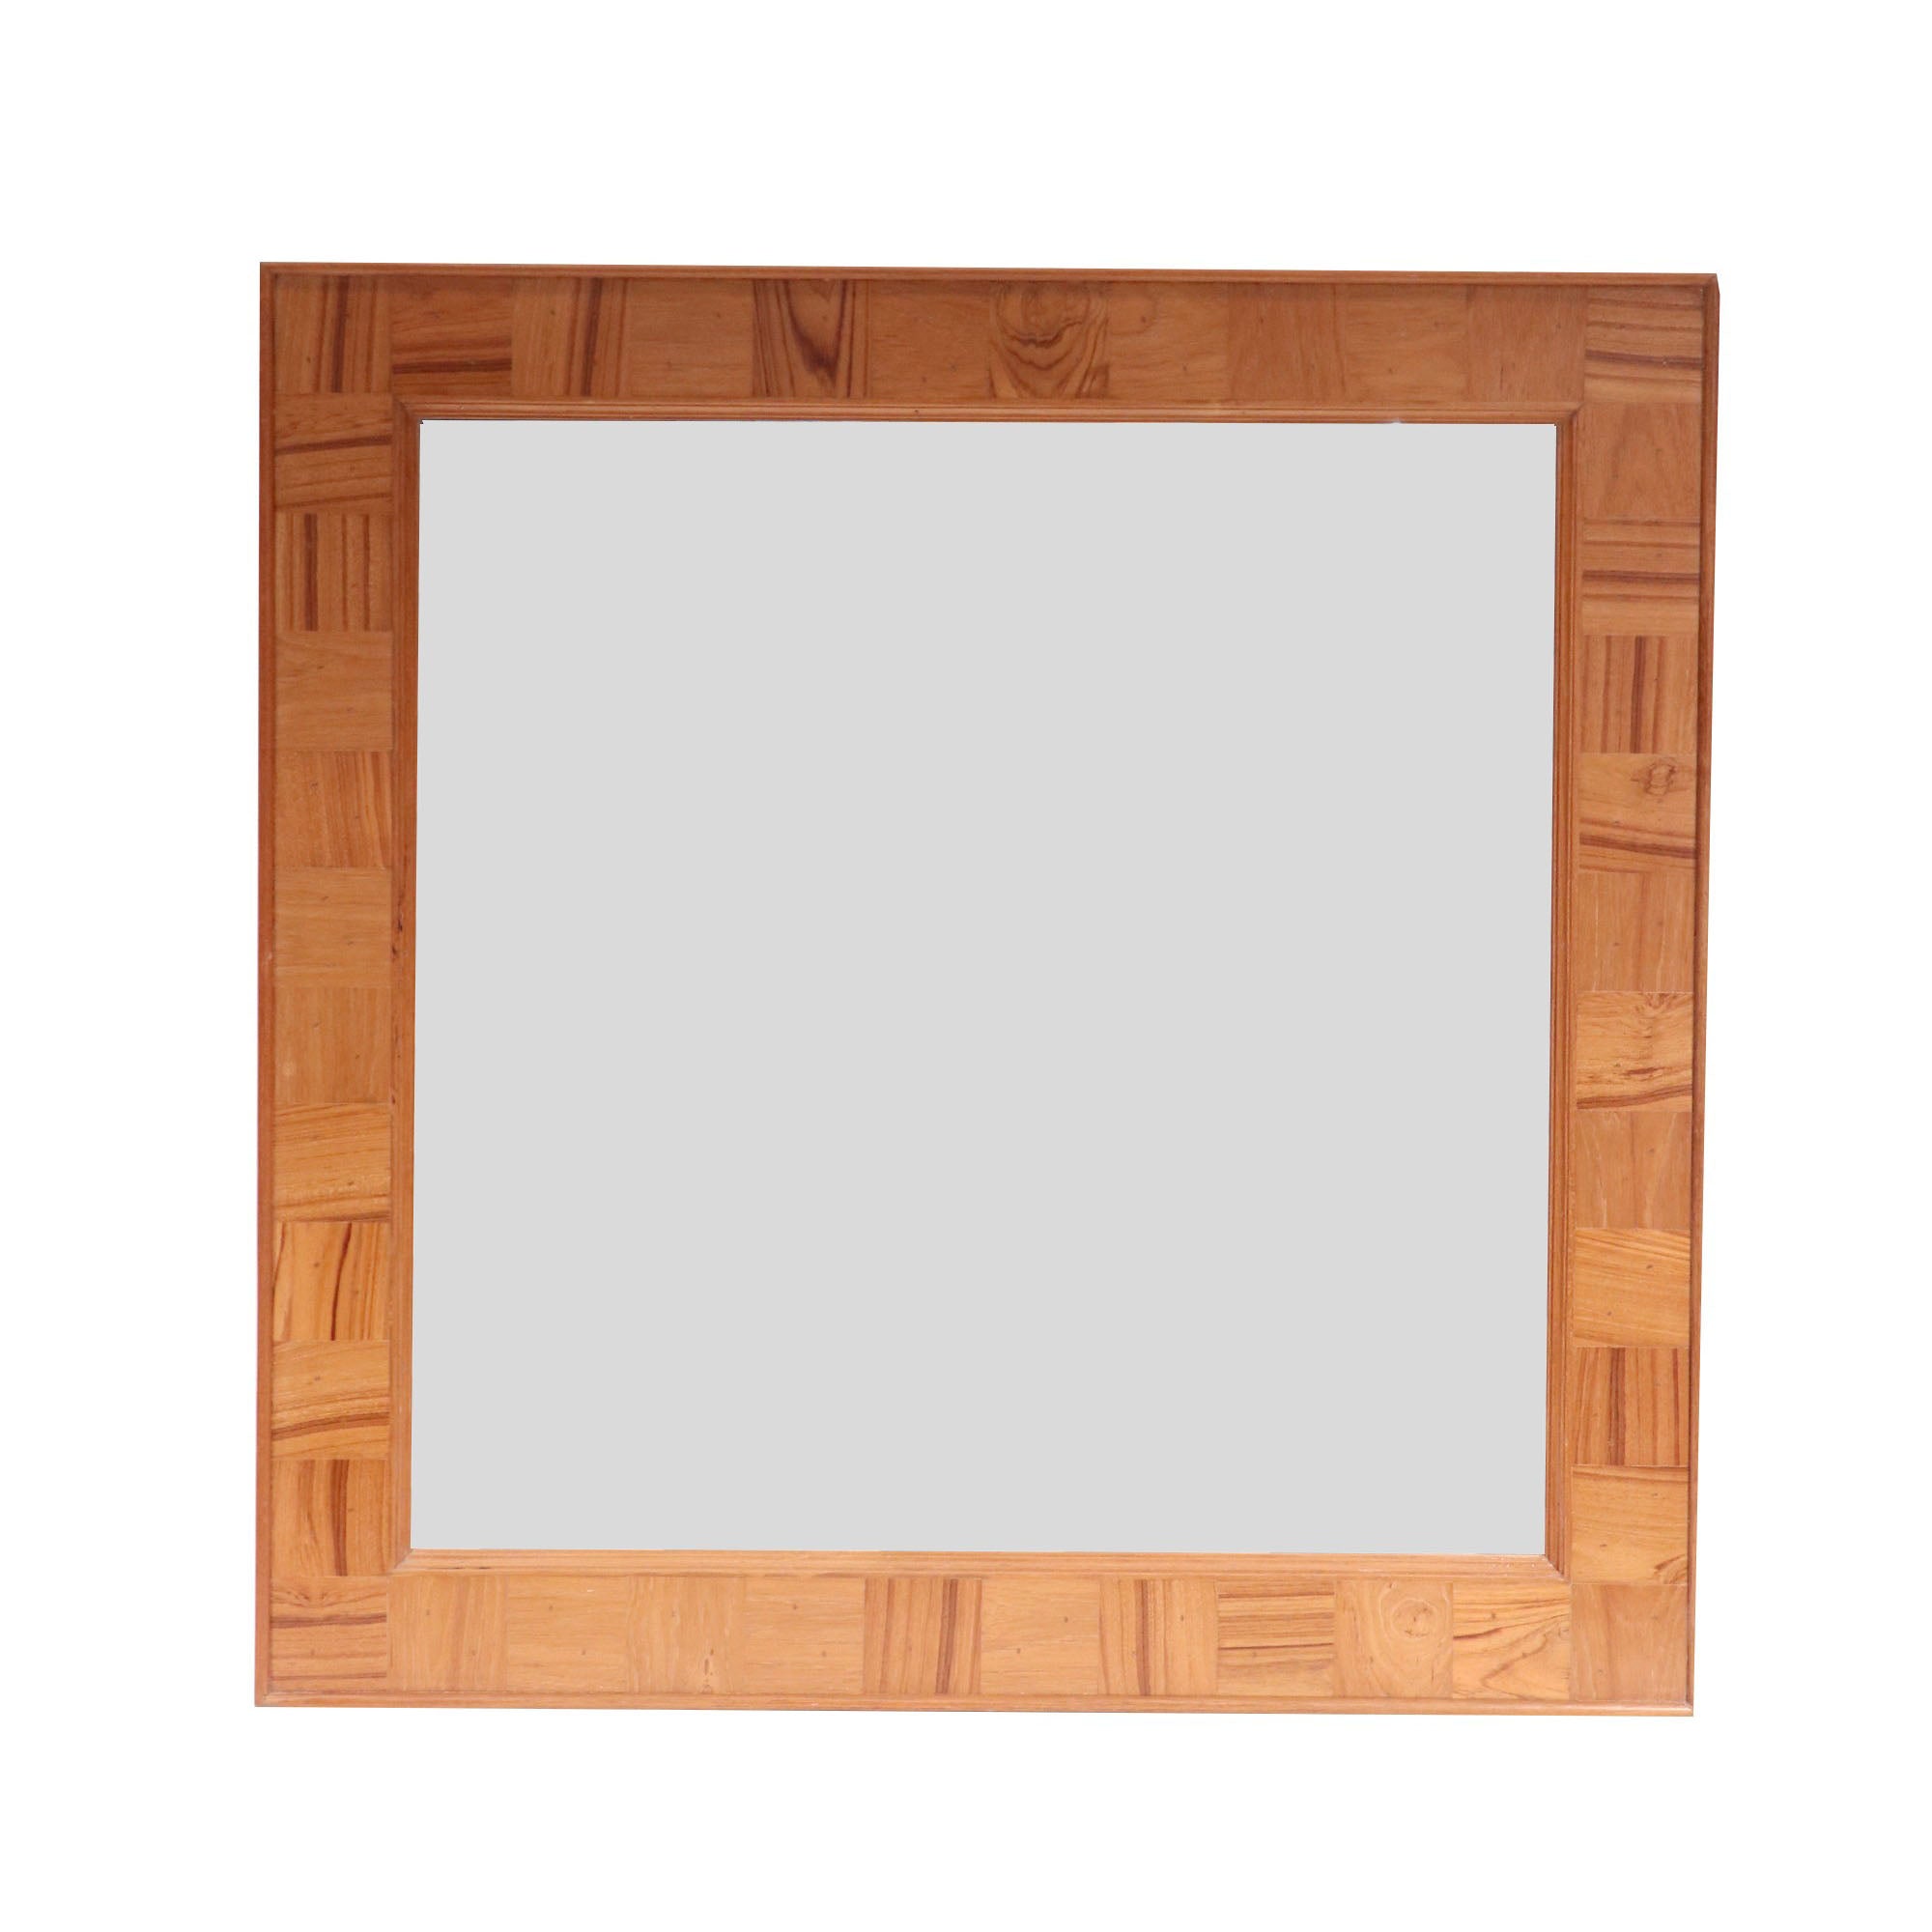 Wooden Mirror Frame Mirror